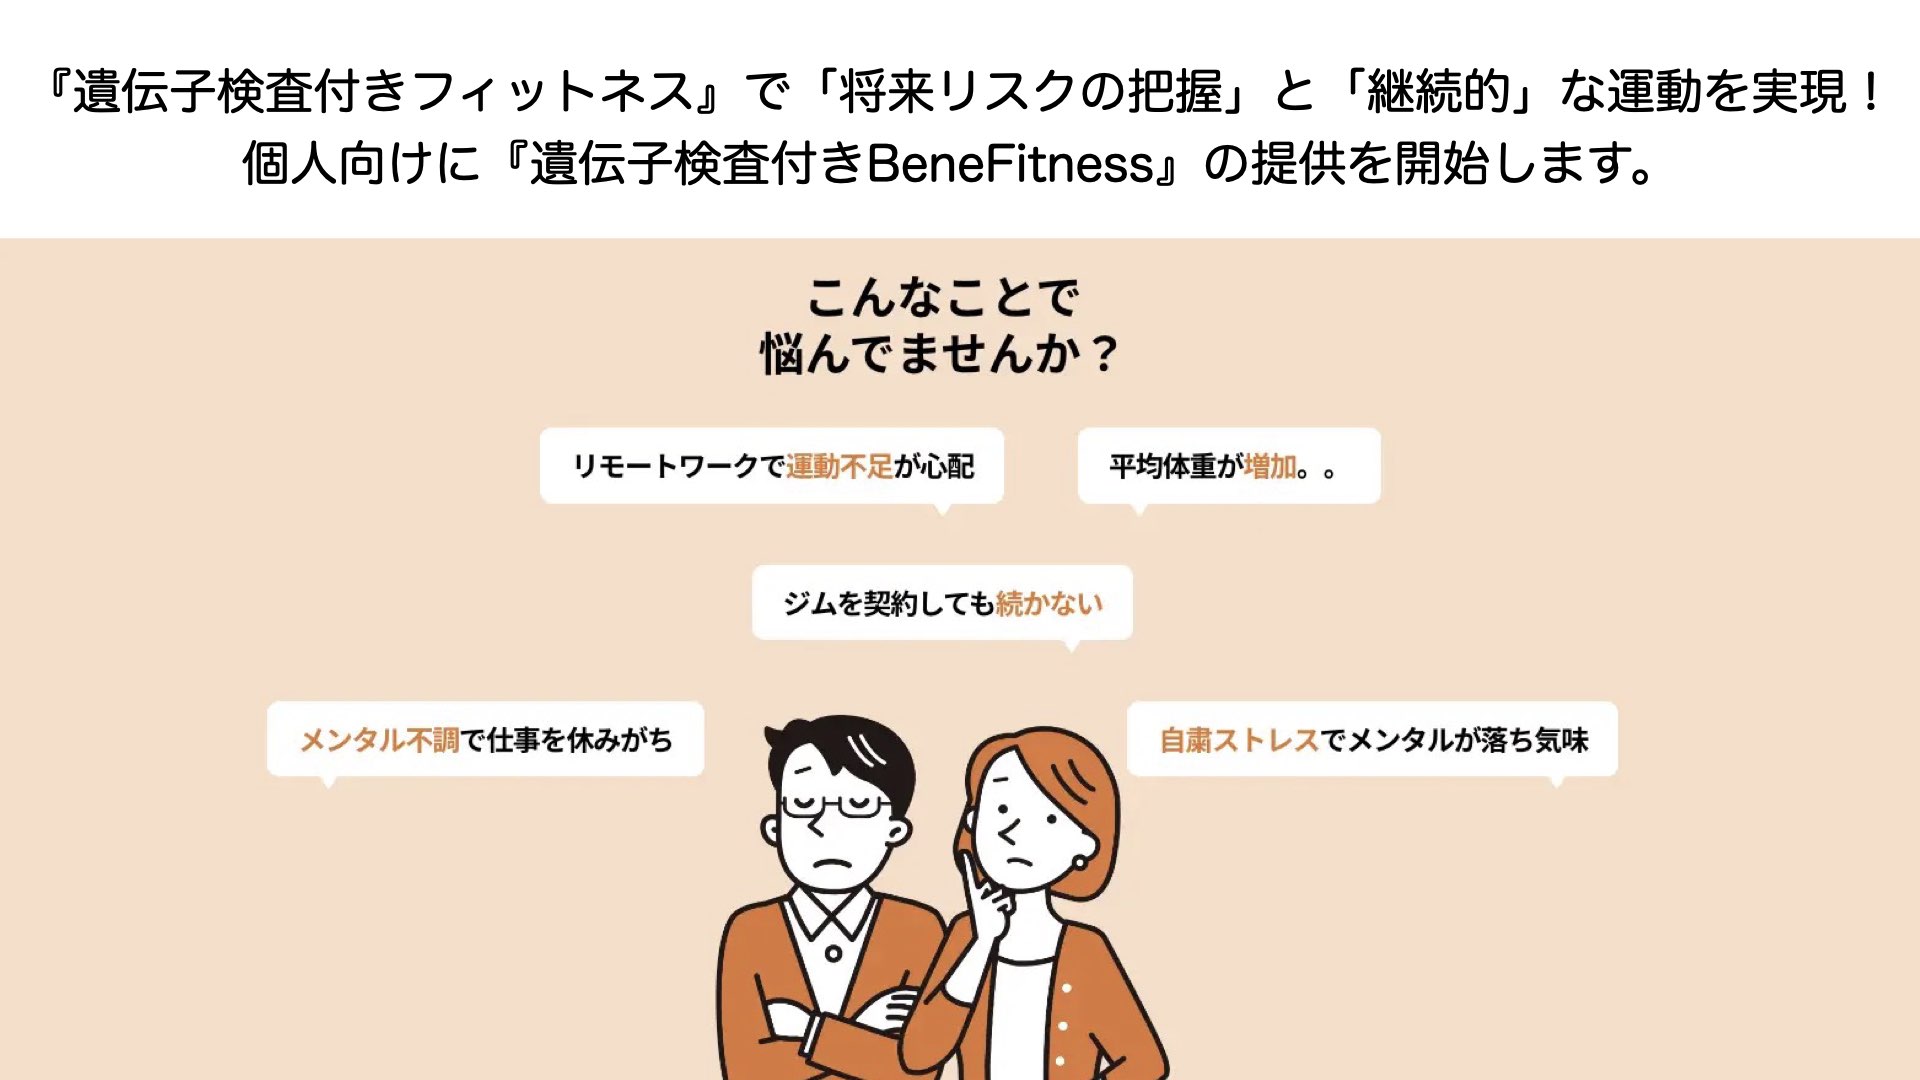 【秋澤先生プレスリリース】 『遺伝子検査付きフィットネス』で「将来リスクの把握」と「継続的」な運動を実現！個人向けに『遺伝子検査付きBeneFitness』の提供を開始します。